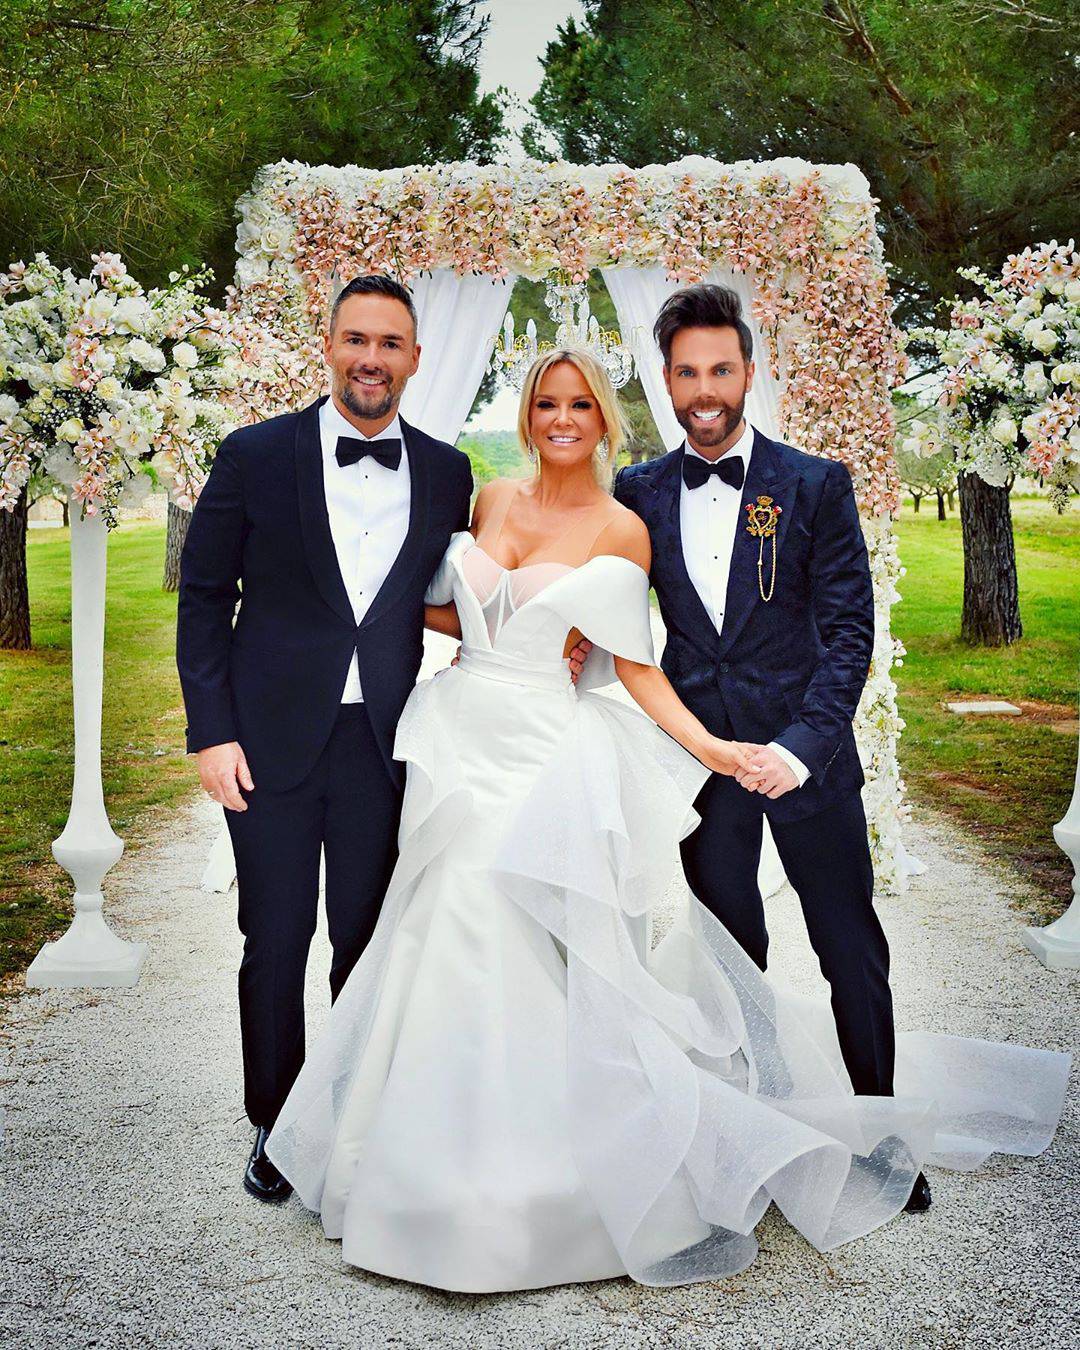 Maja objavila neviđene fotke s vjenčanja: 'Ljubavi, sretna ti druga godina najljepšeg braka'